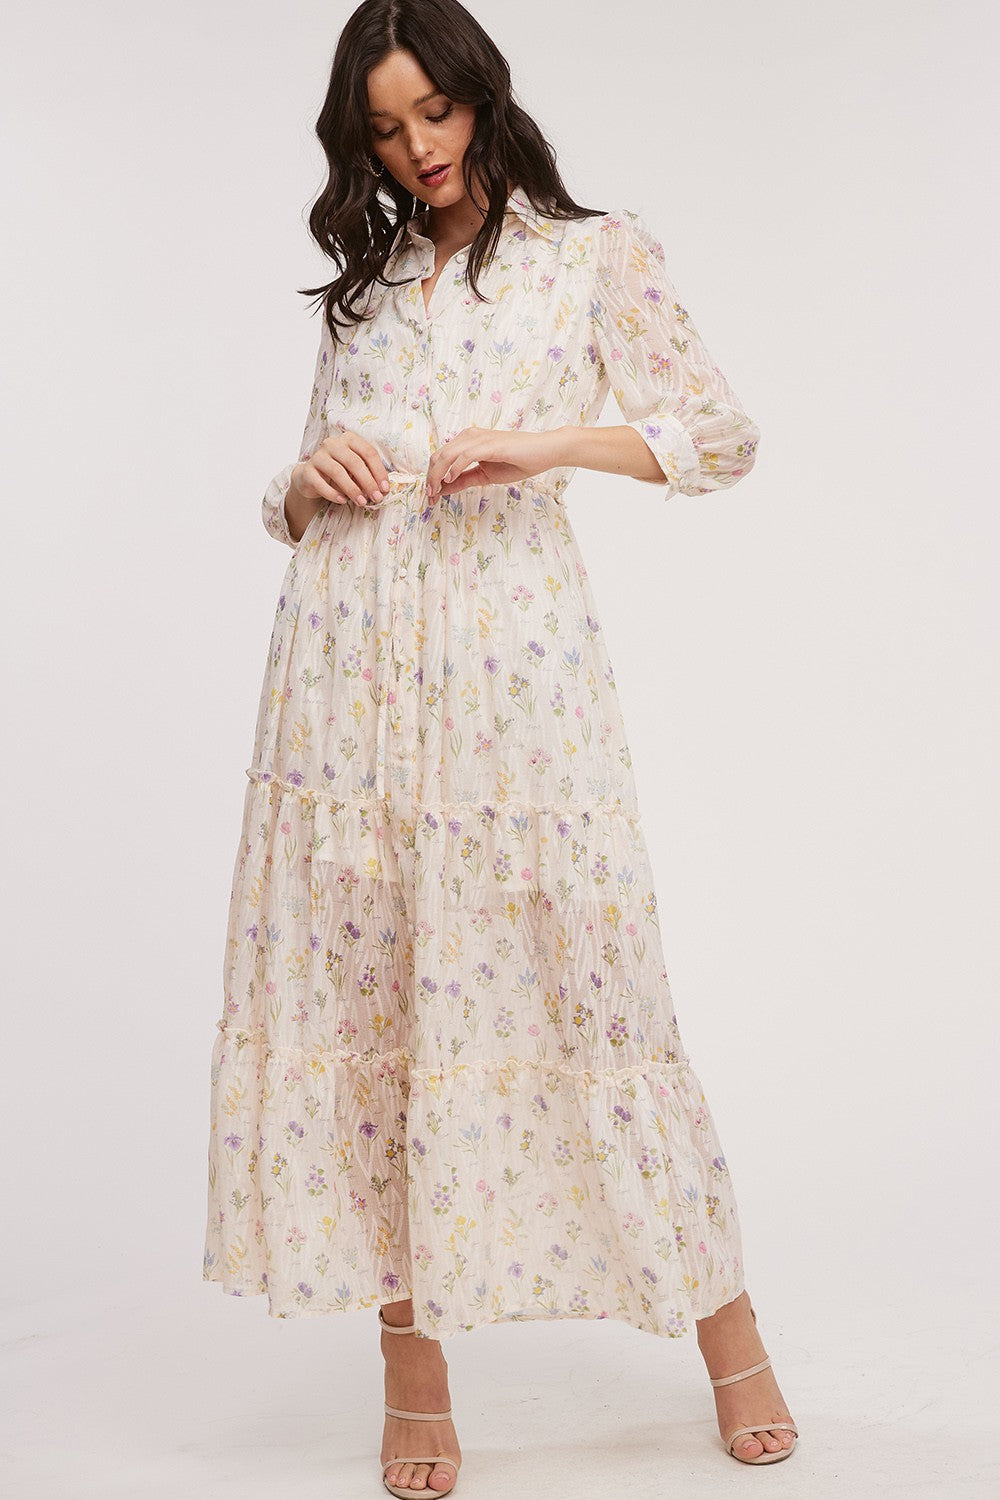 Floral Chiffon Shirt Style Mini Dress